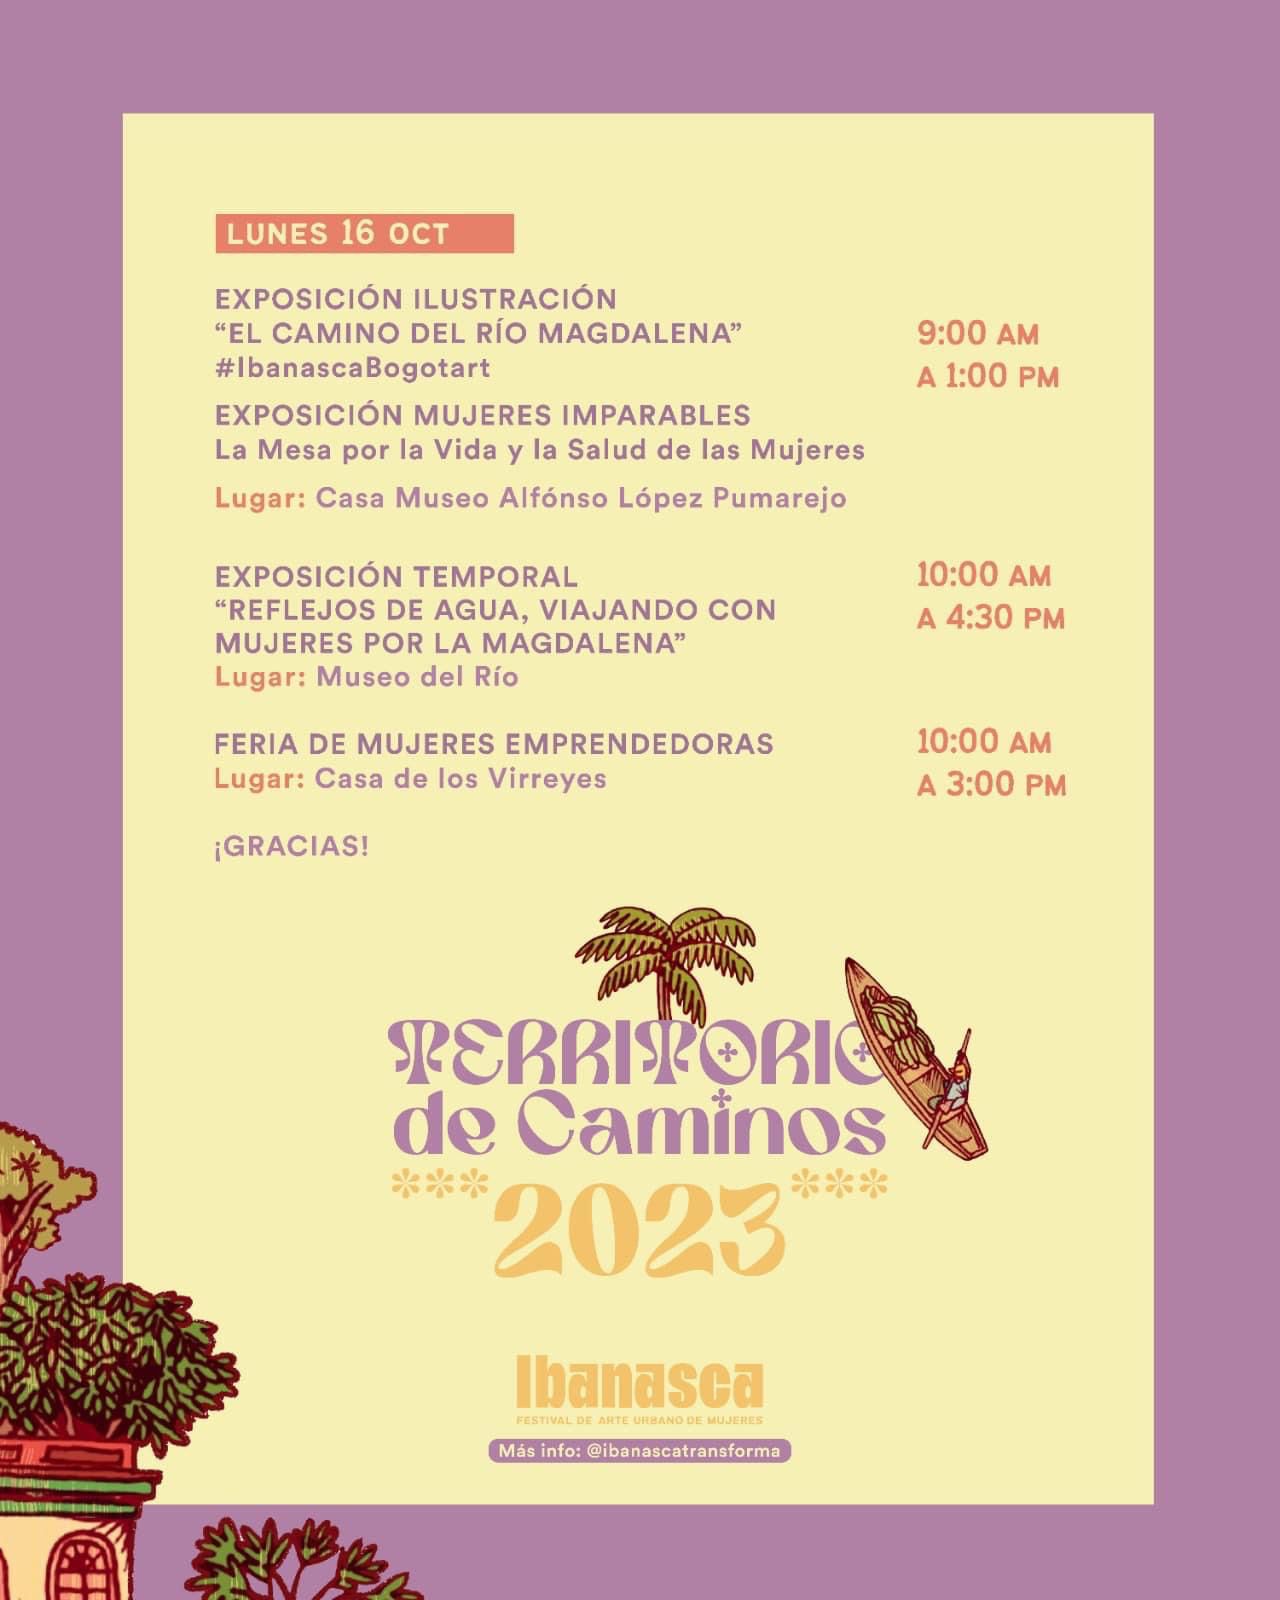 El Ibanasca Festival, es un evento gratuito, y cuenta con el apoyo de la Dirección de Cultura Departamental del Tolima.